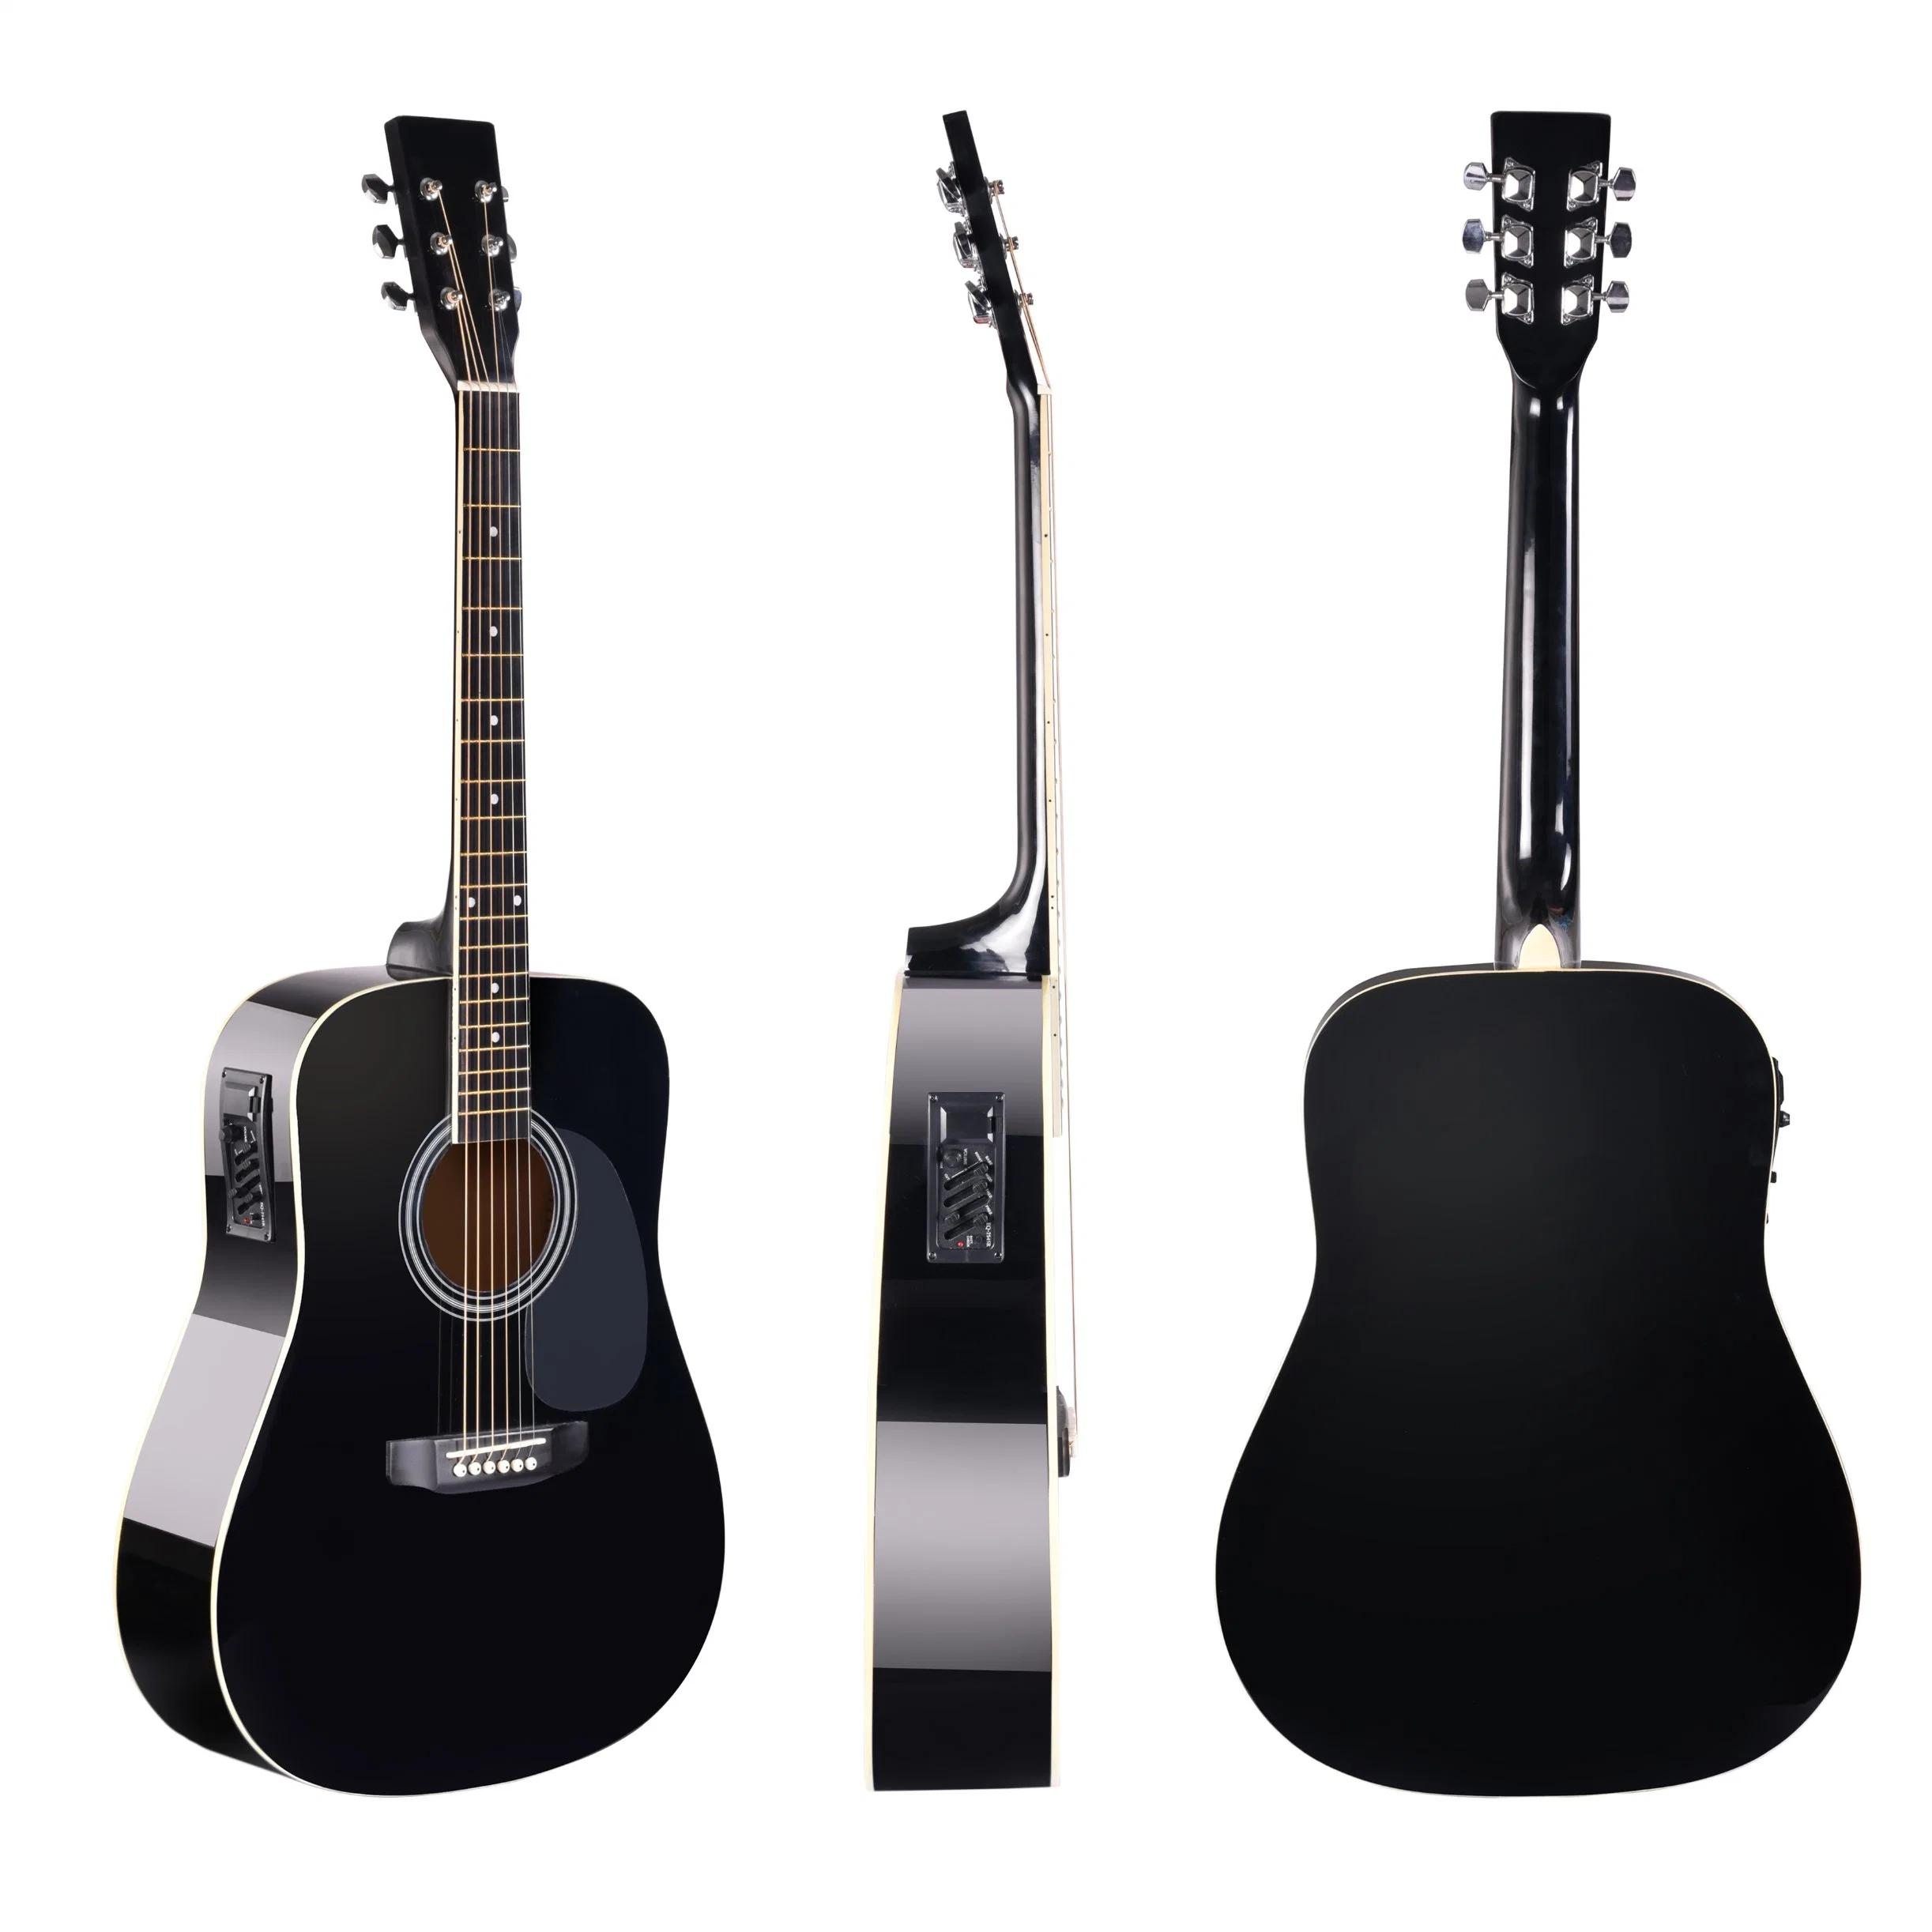 Fa209tce Chinese Factory Handmade Hohe Qualität/hohe Kostenleistung Acoustic Guitar Günstigste Gitarre Für Anfänger